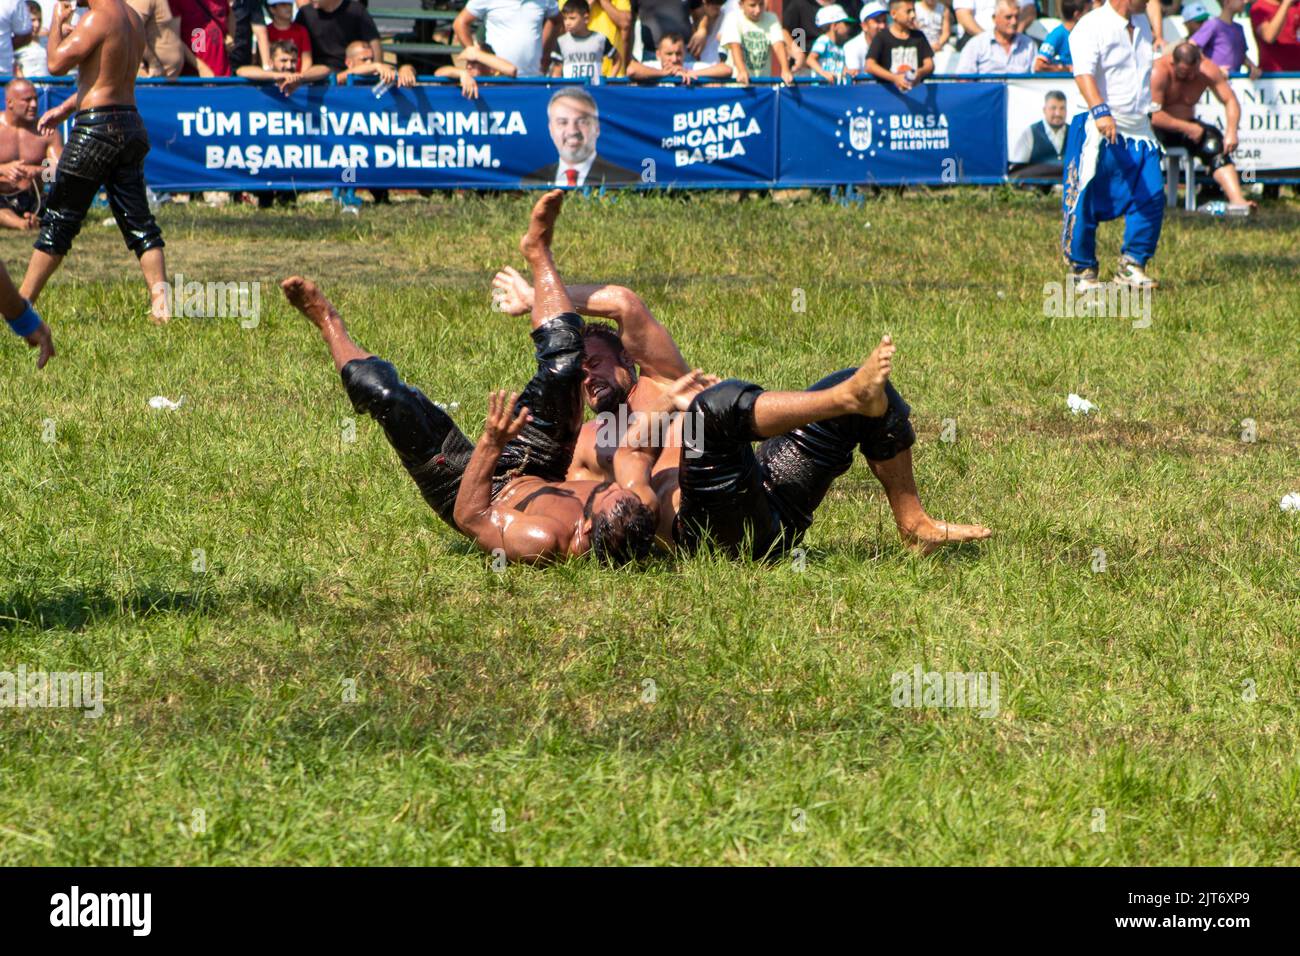 Bursa, Türkei - August 2022: Traditionelle türkische Ölwrestling, Wrestler kämpfen, um ihre Gegner auf dem Gras an heißen, sonnigen Tag zu schlagen, selektive Fokus. Stockfoto